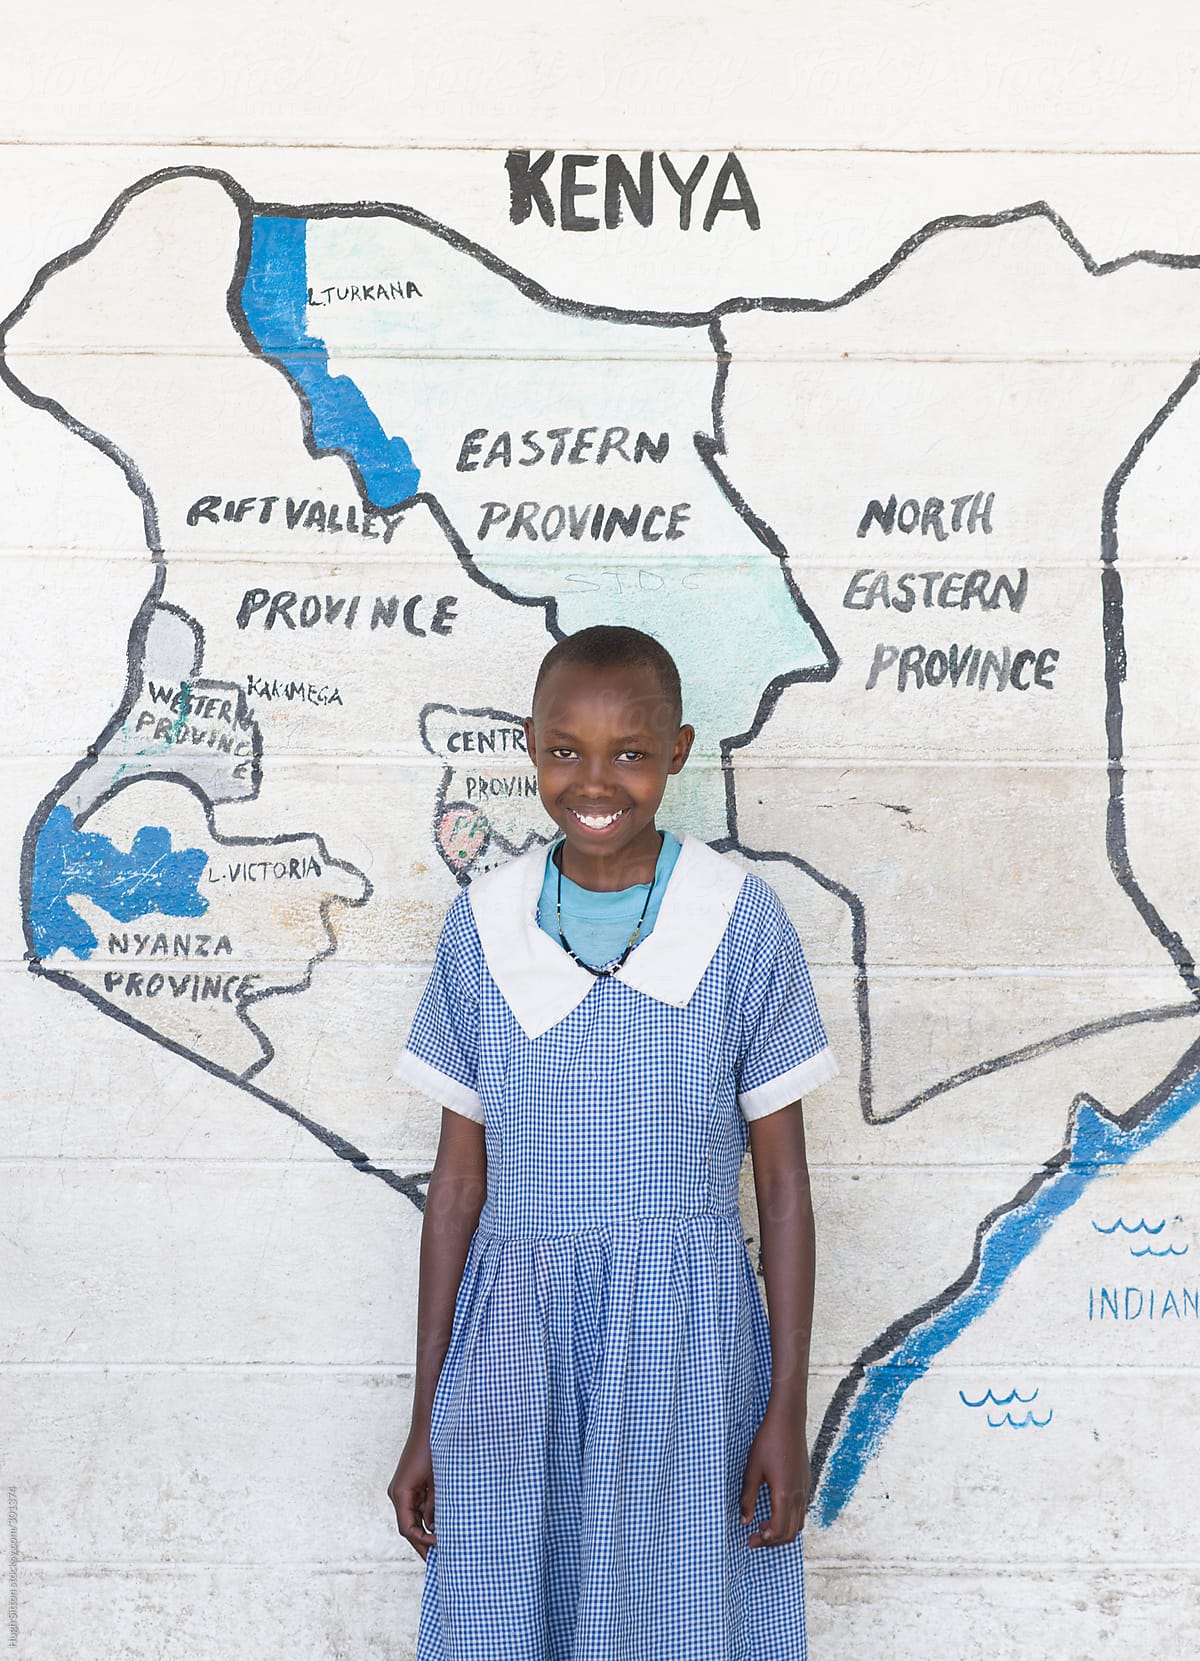 School girl standing in front of map of Kenya.